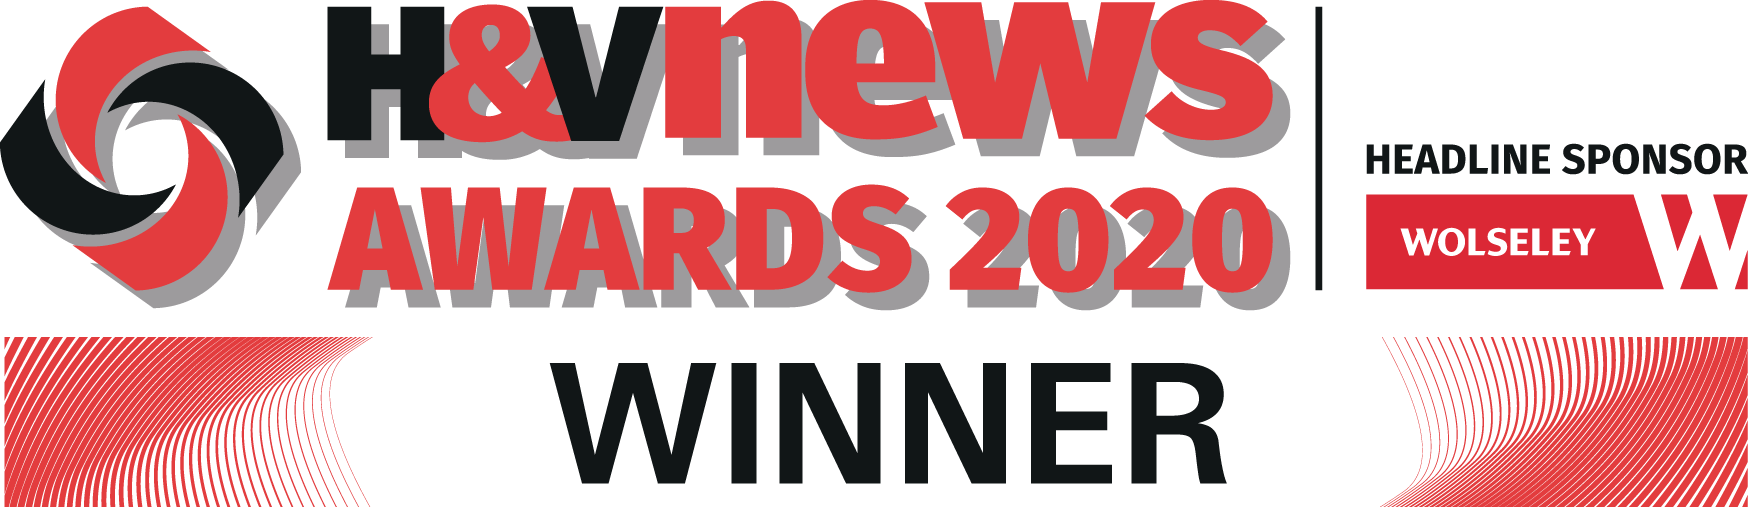 H&V News Award Winner 2020